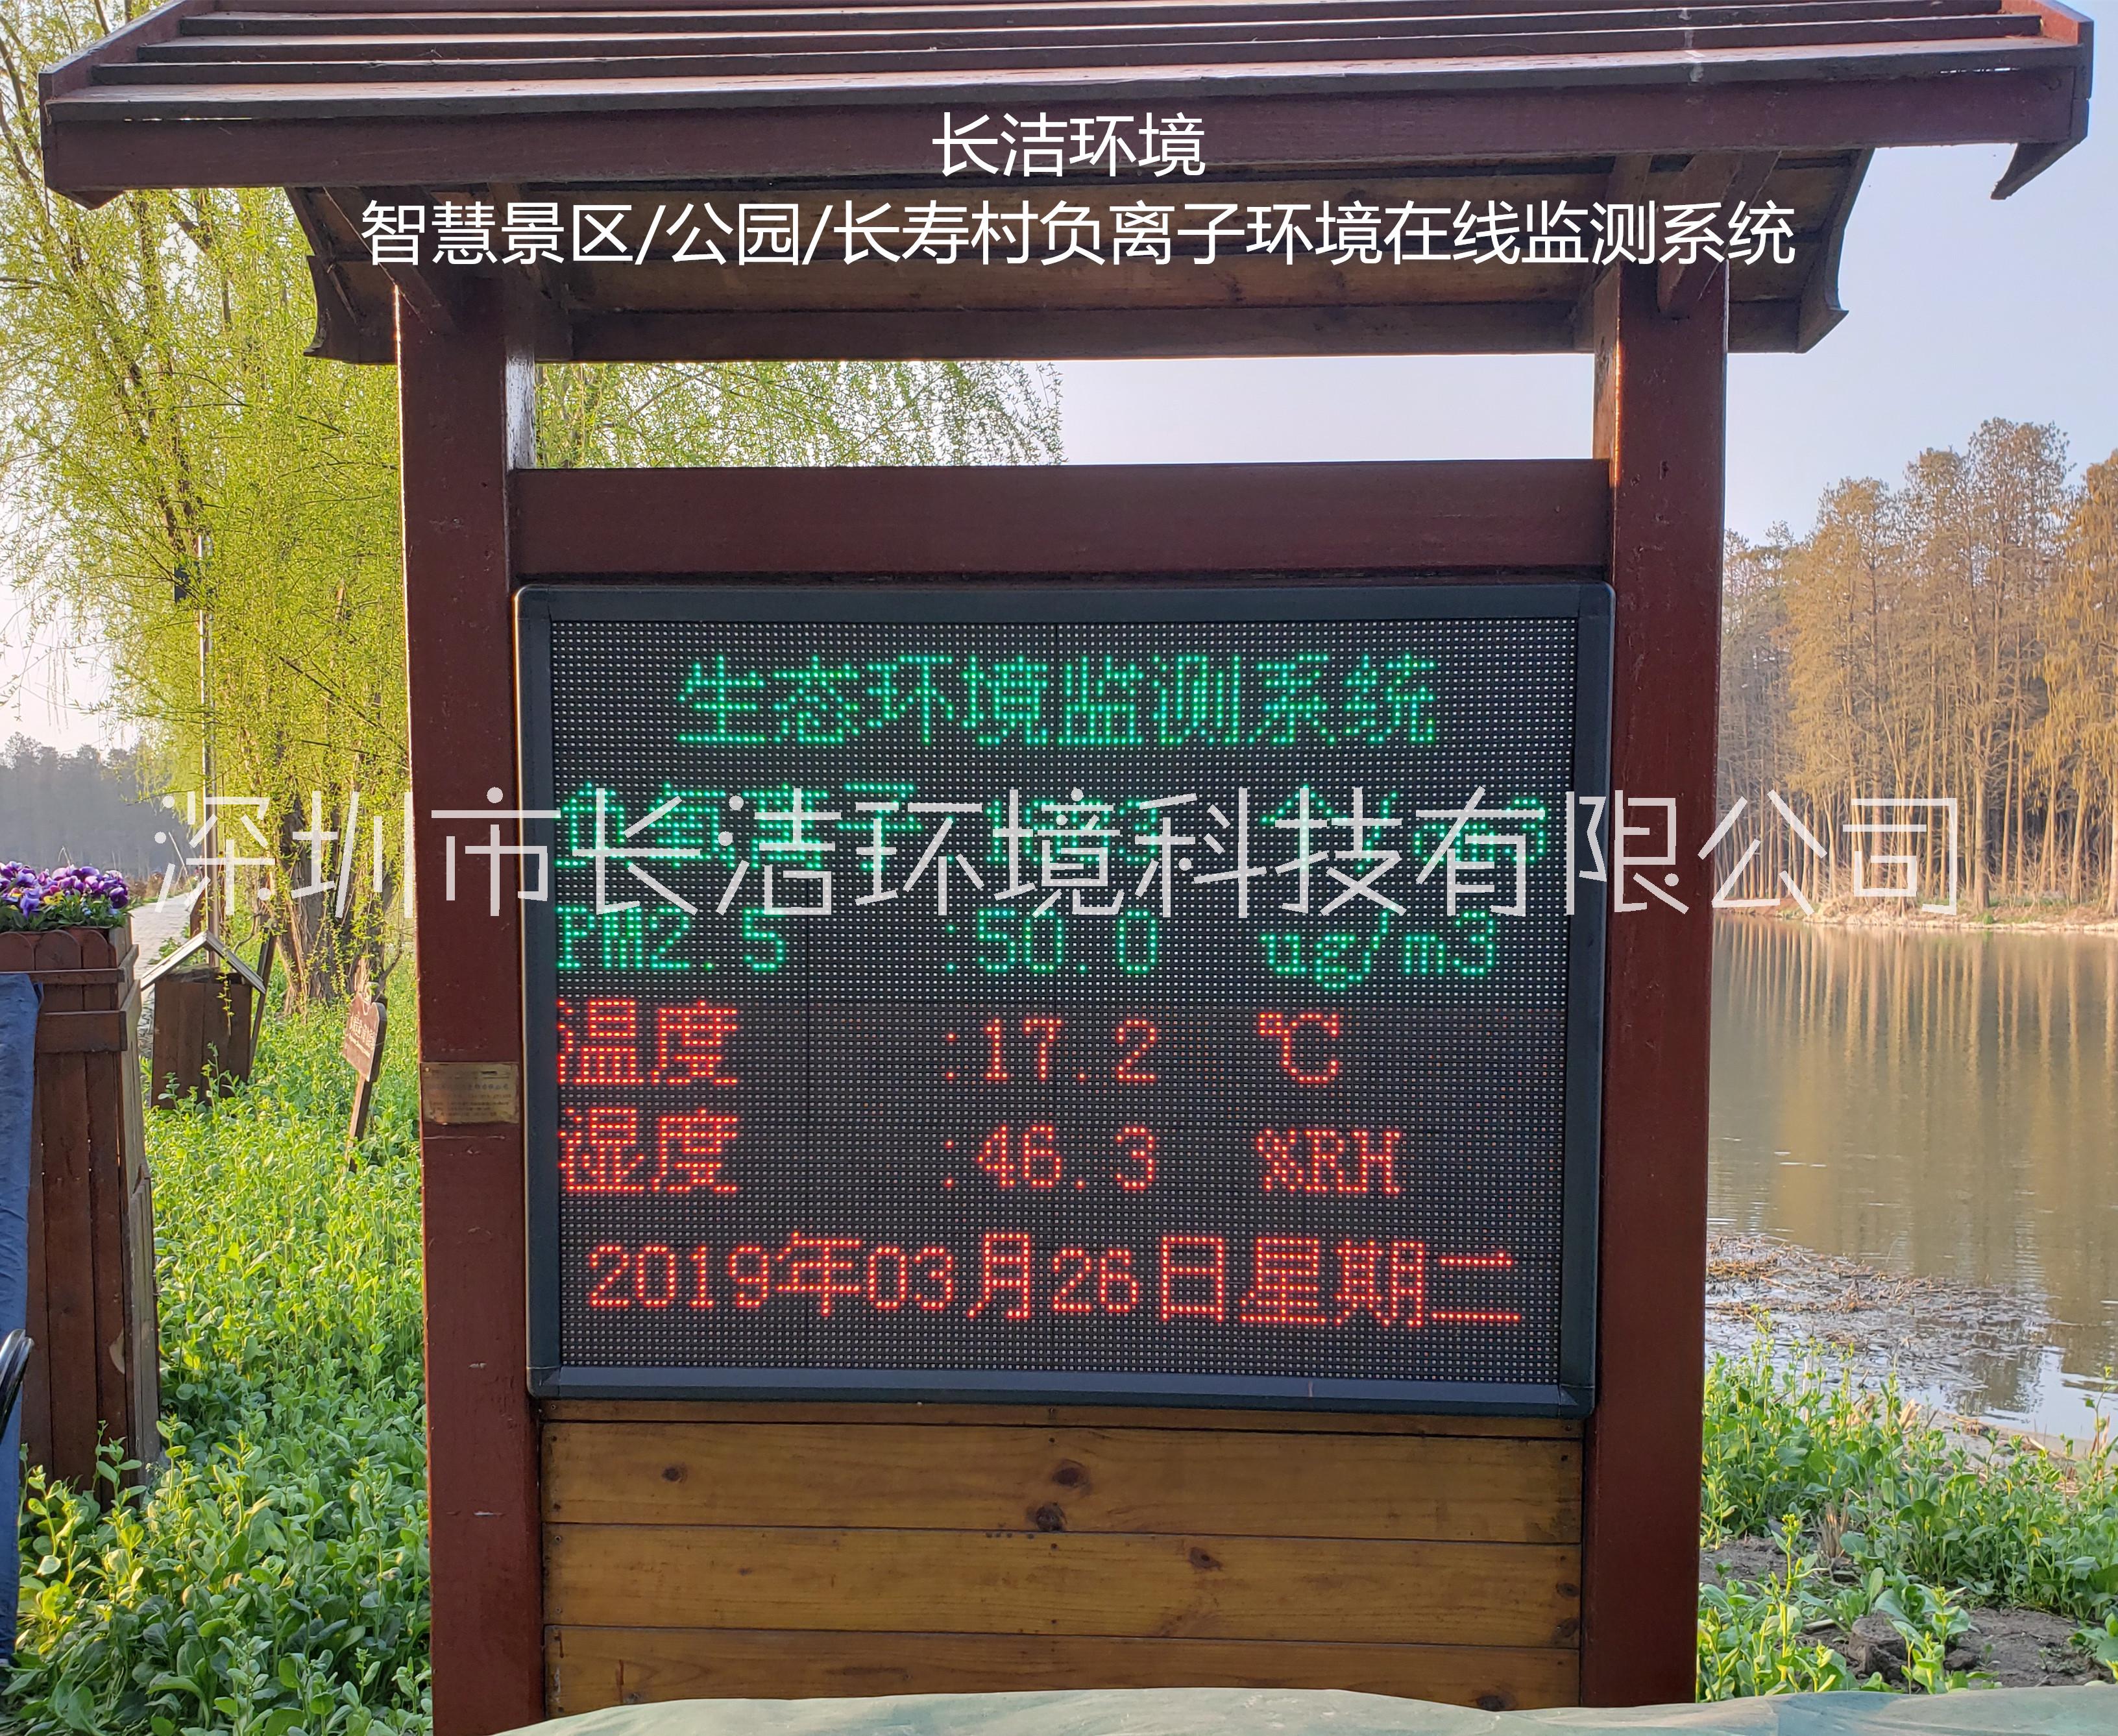 负氧离子在线监测仪 中国智慧旅游景区生态环境质量在线监测系统设备-长洁厂家批发图片